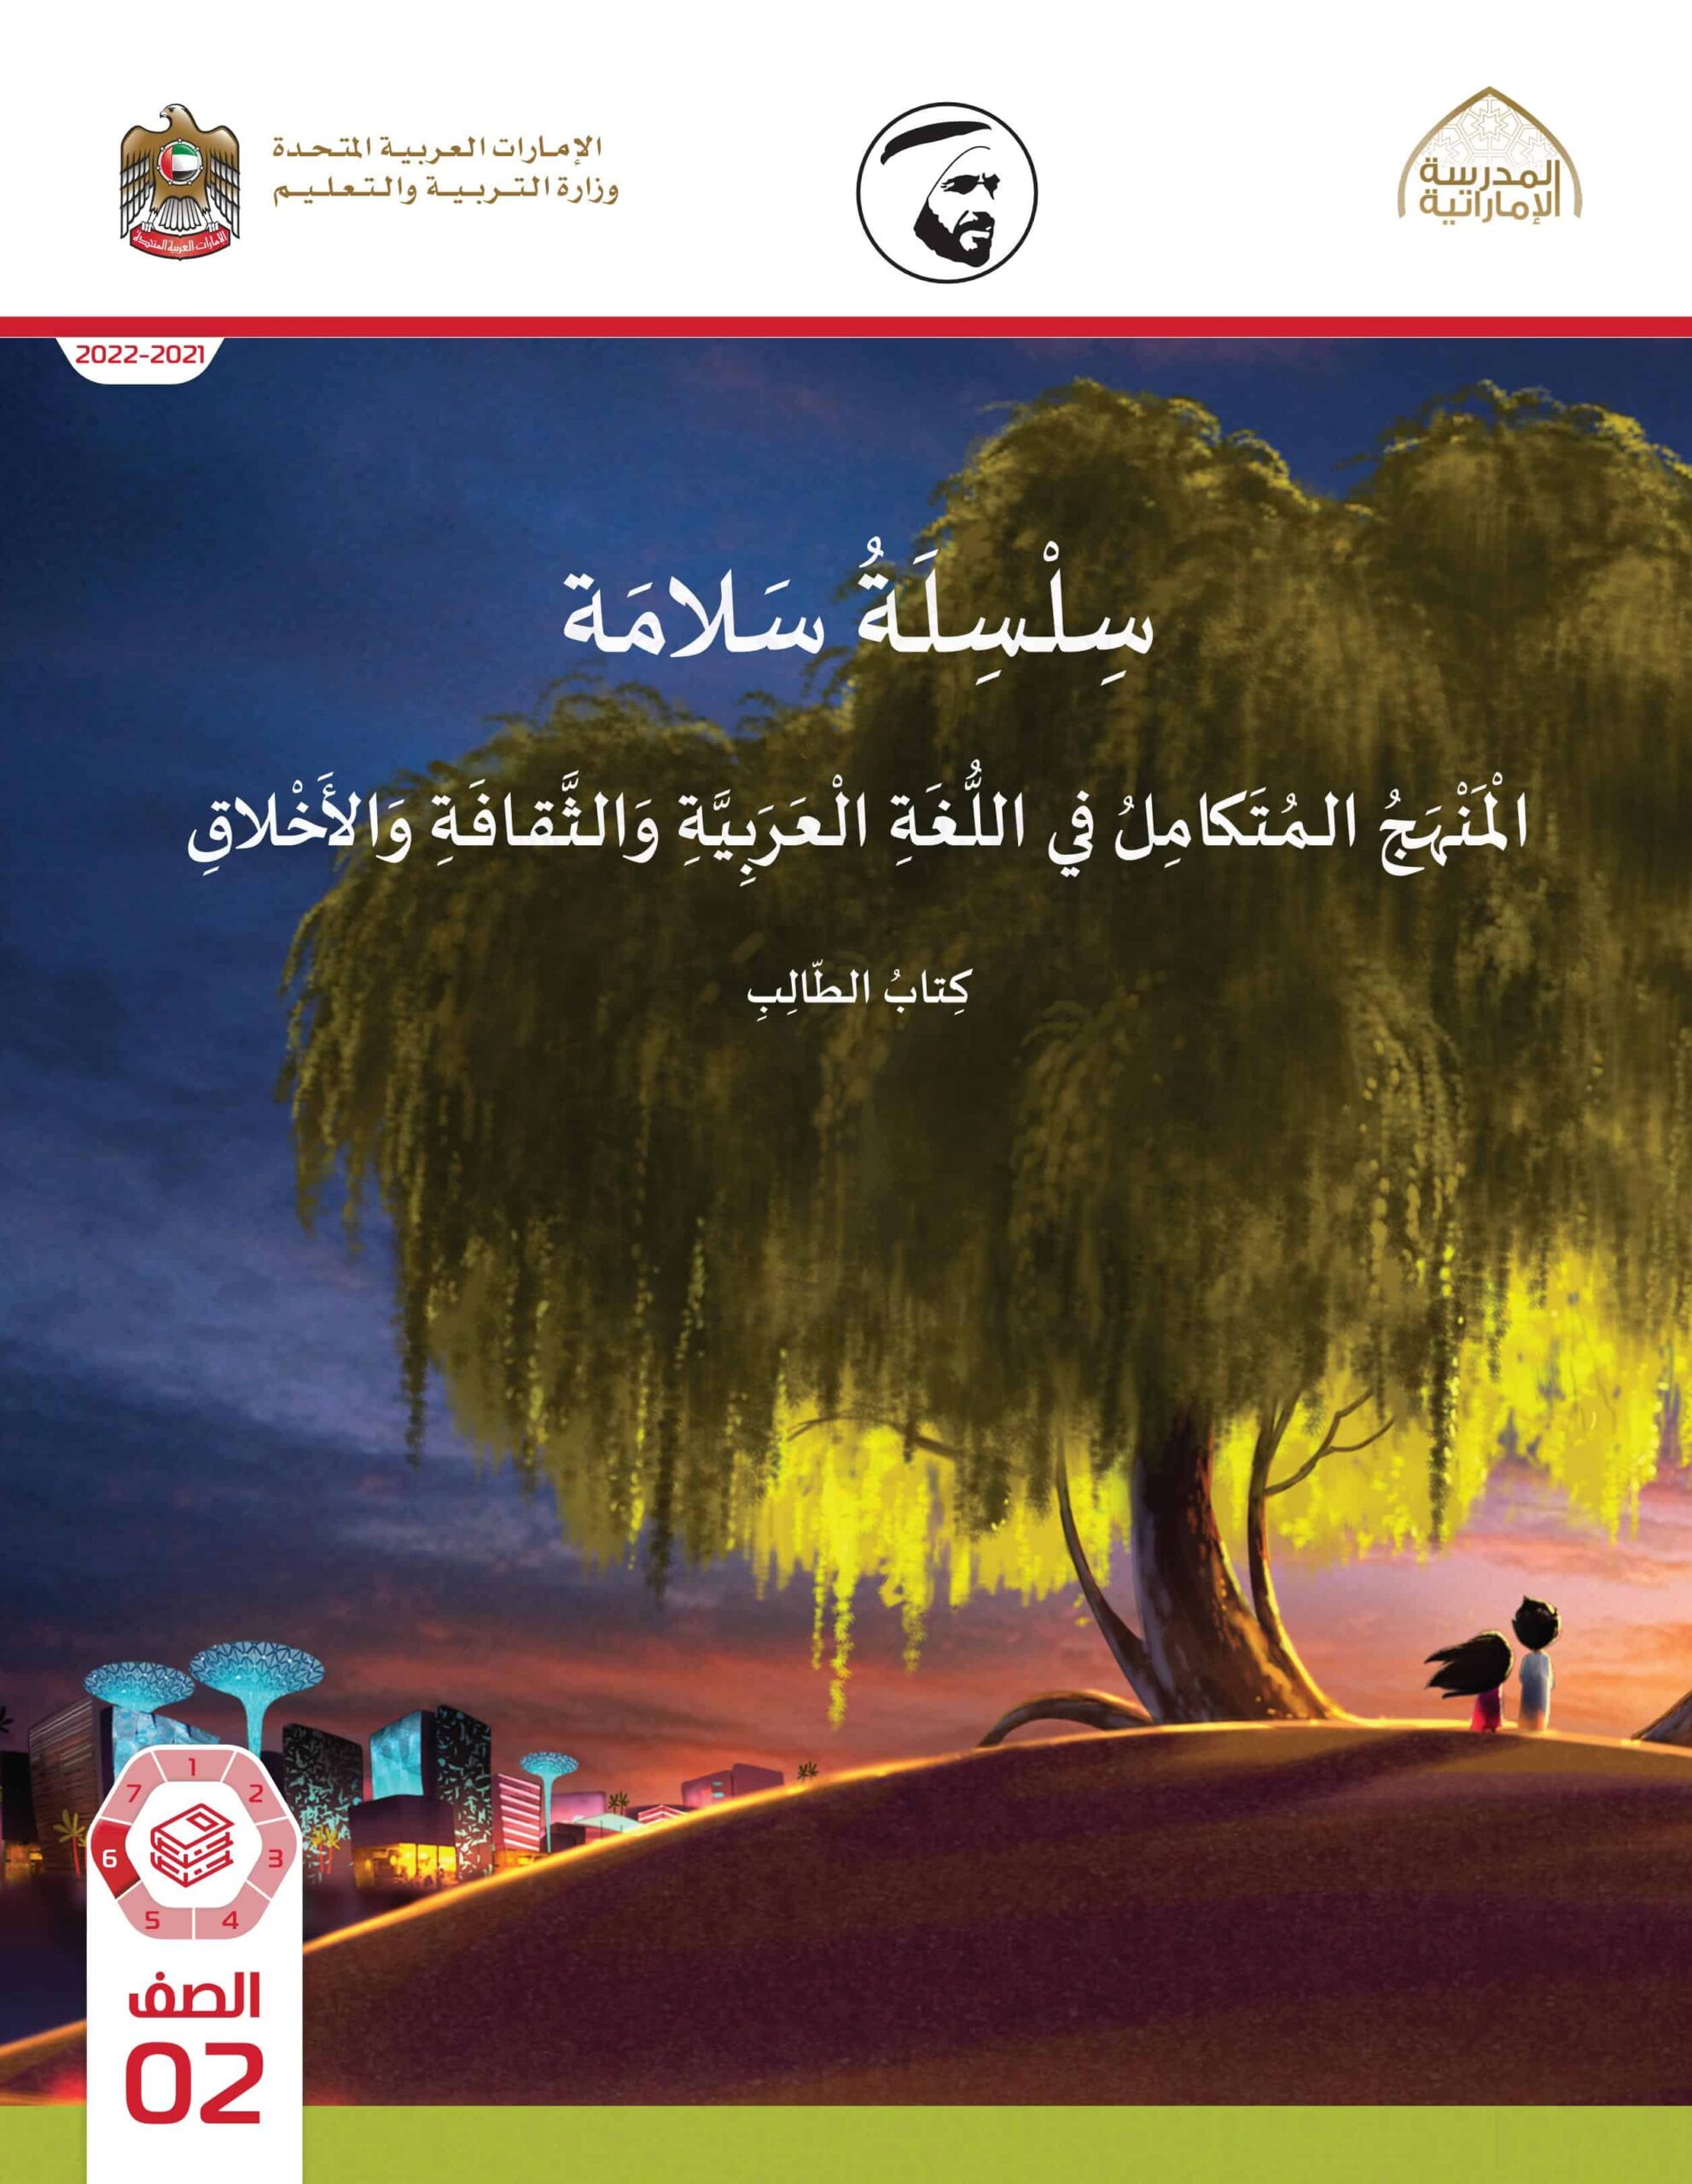 كتاب الطالب المجلد السادس المنهج المتكامل الصف الثاني الفصل الدراسي الثالث 2021-2022